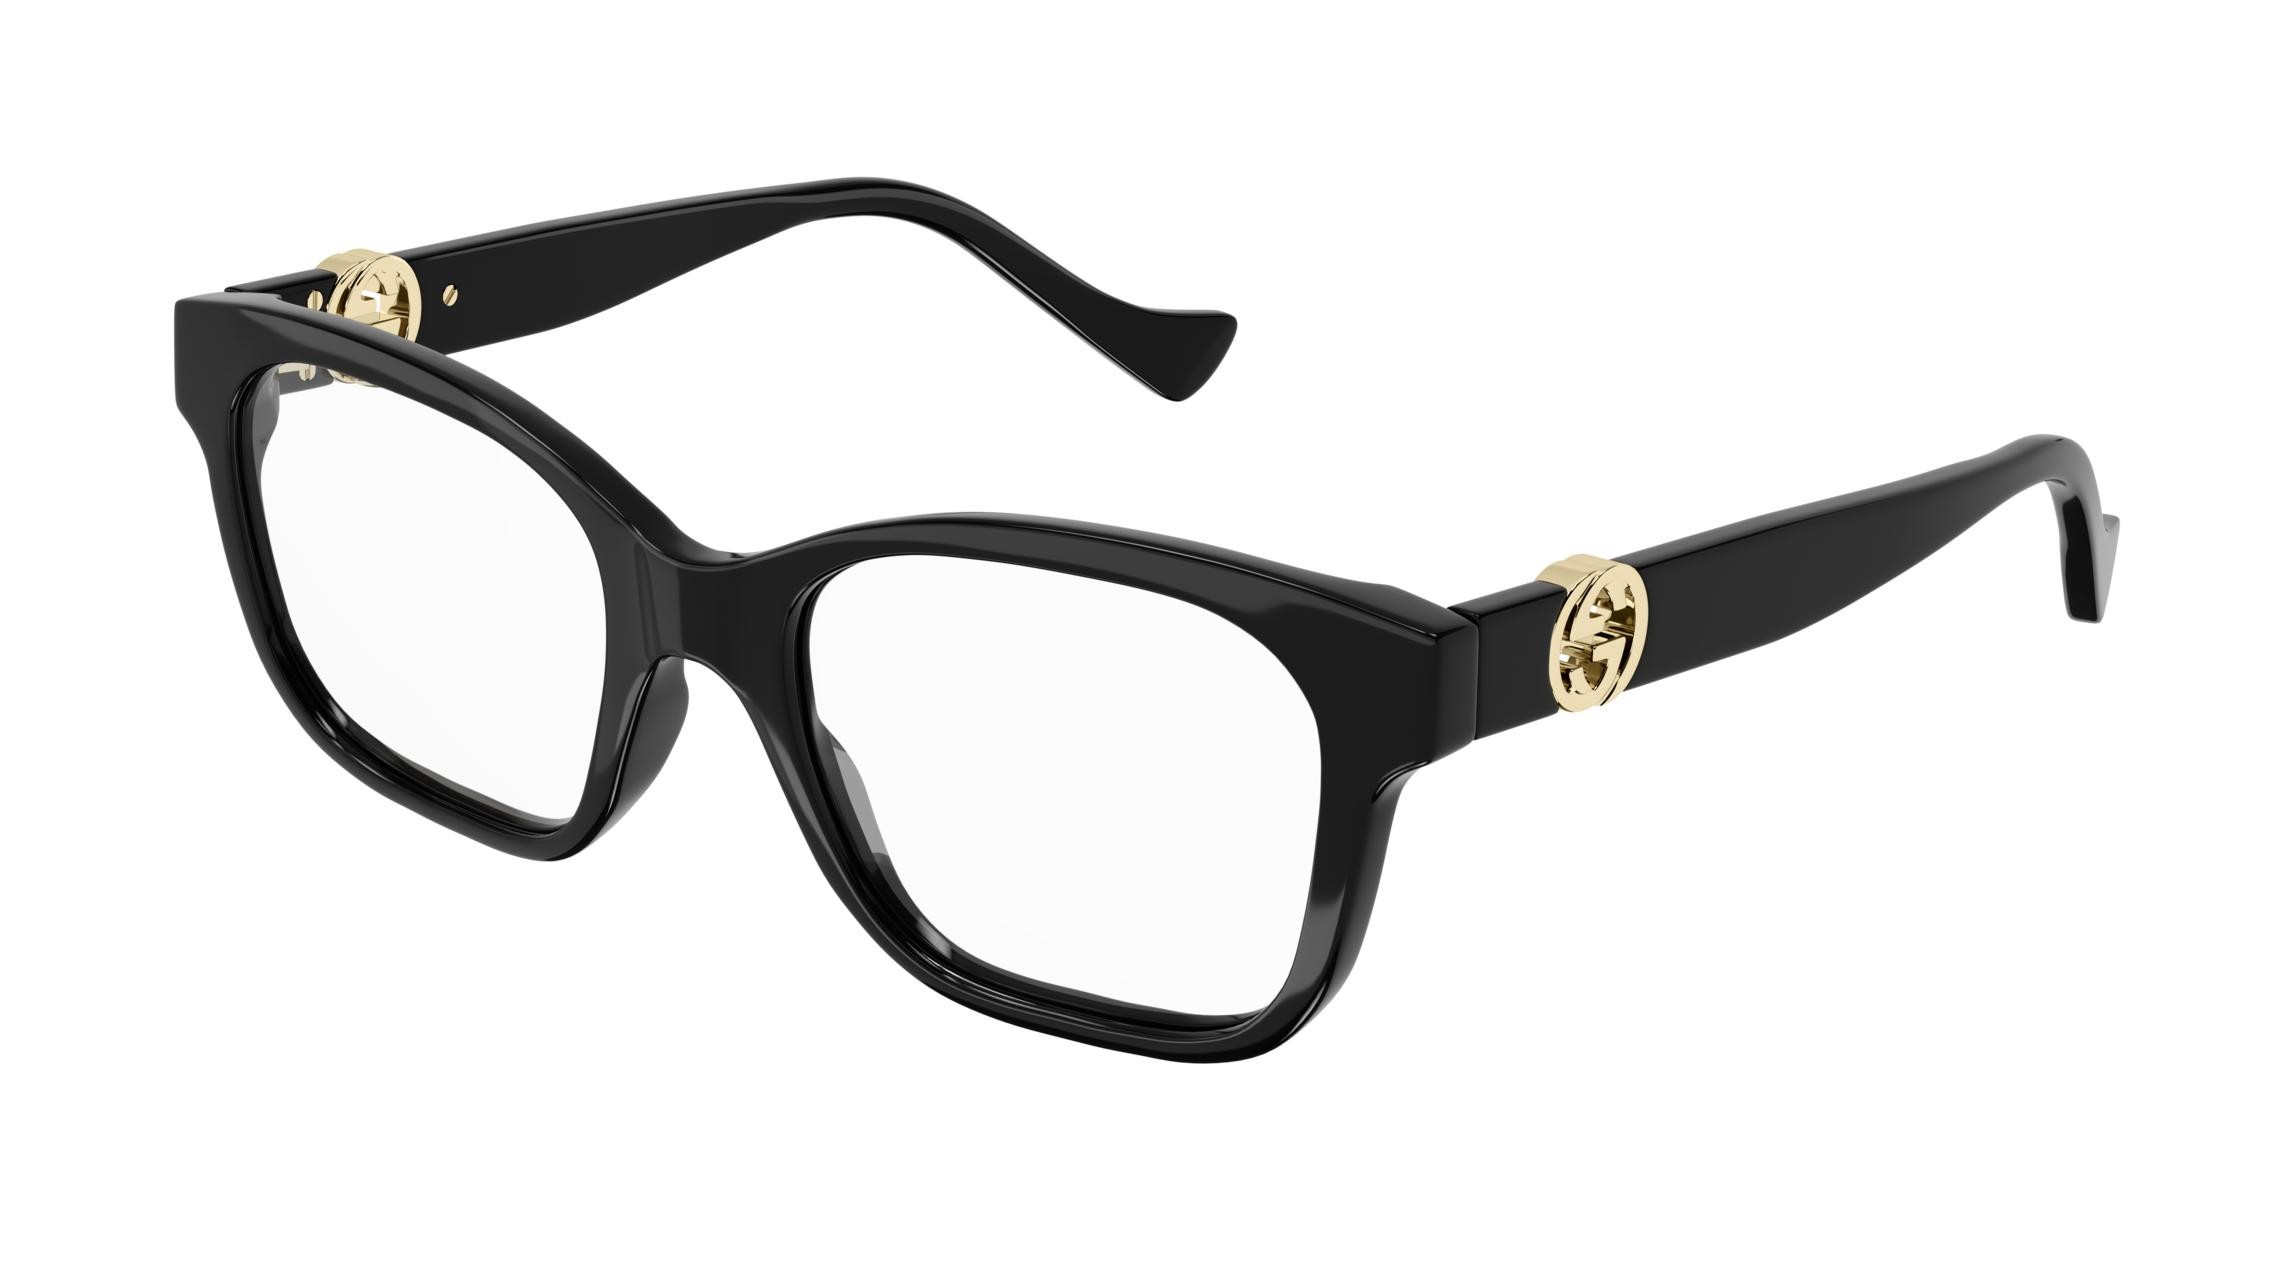 Estás gafas de Lujo te diferencia combinandolas con tu look más exclusivo. Las gafas Gucci extravagancia,